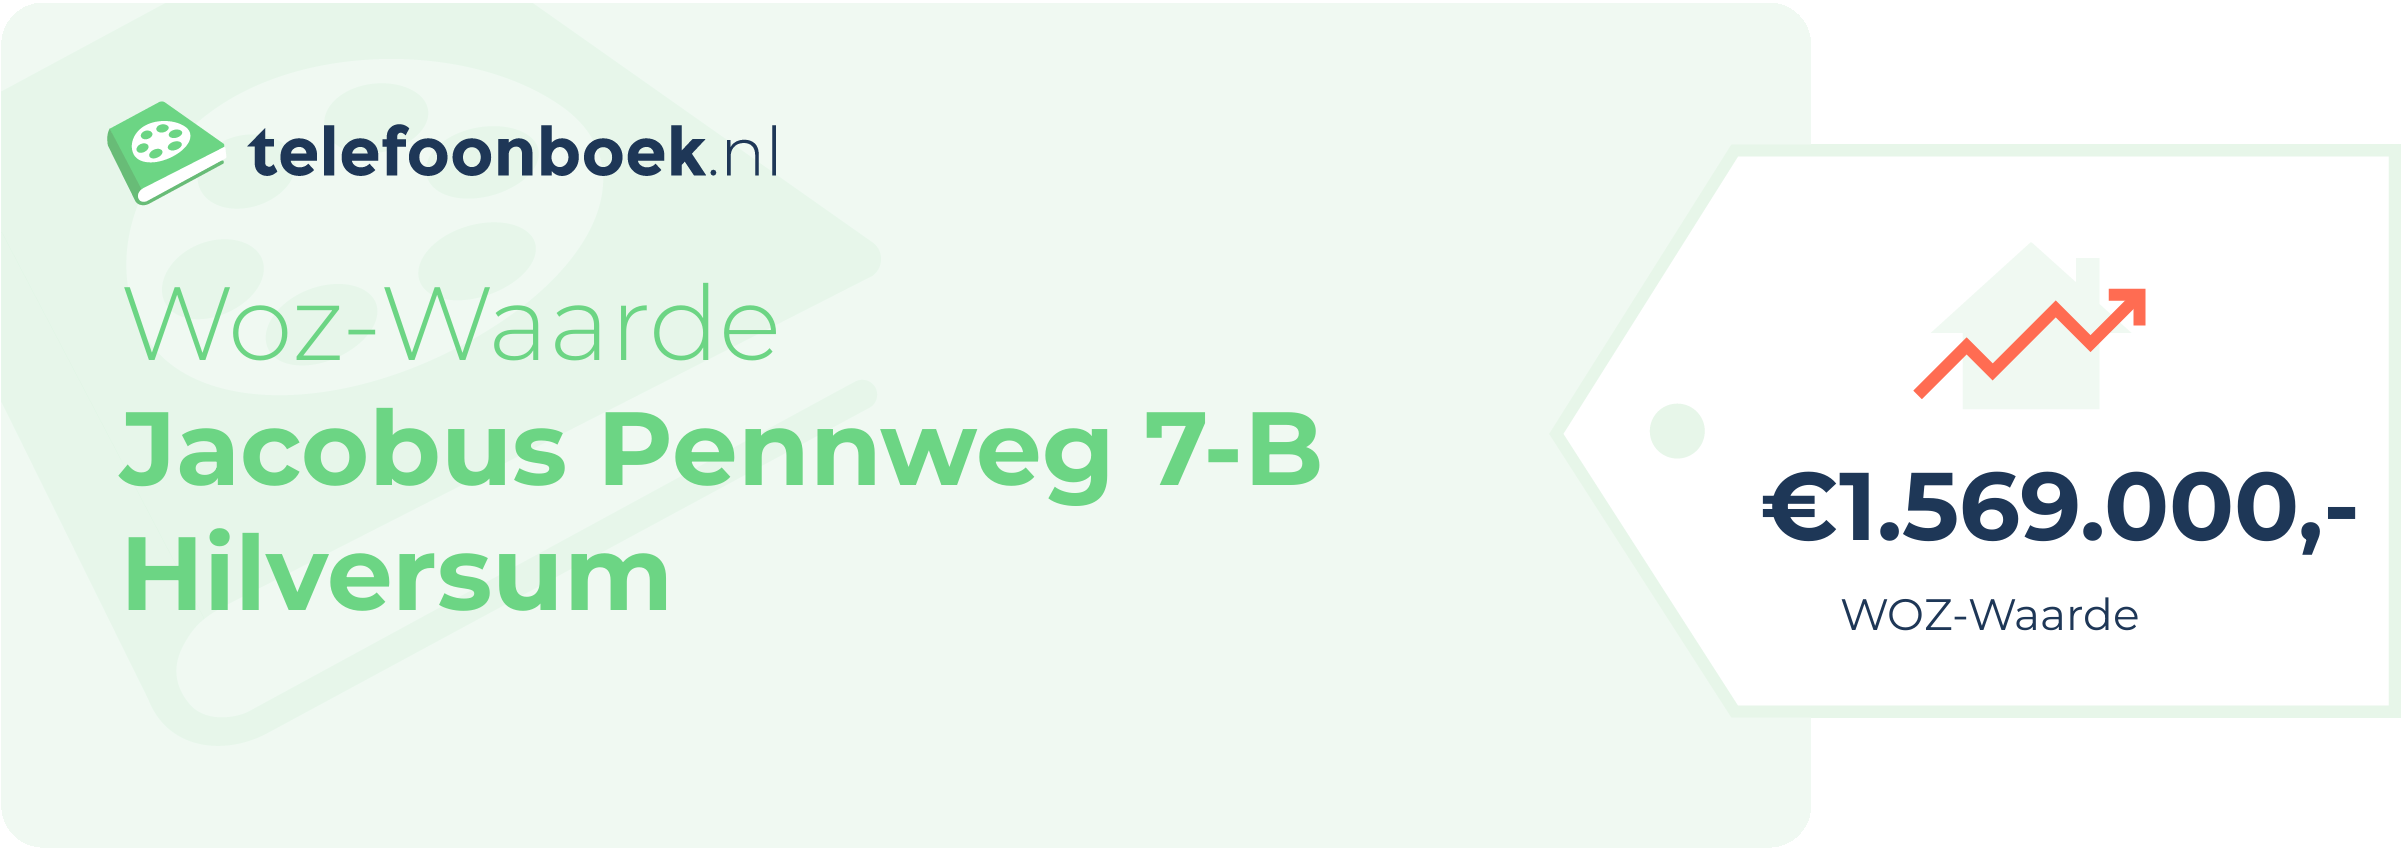 WOZ-waarde Jacobus Pennweg 7-B Hilversum